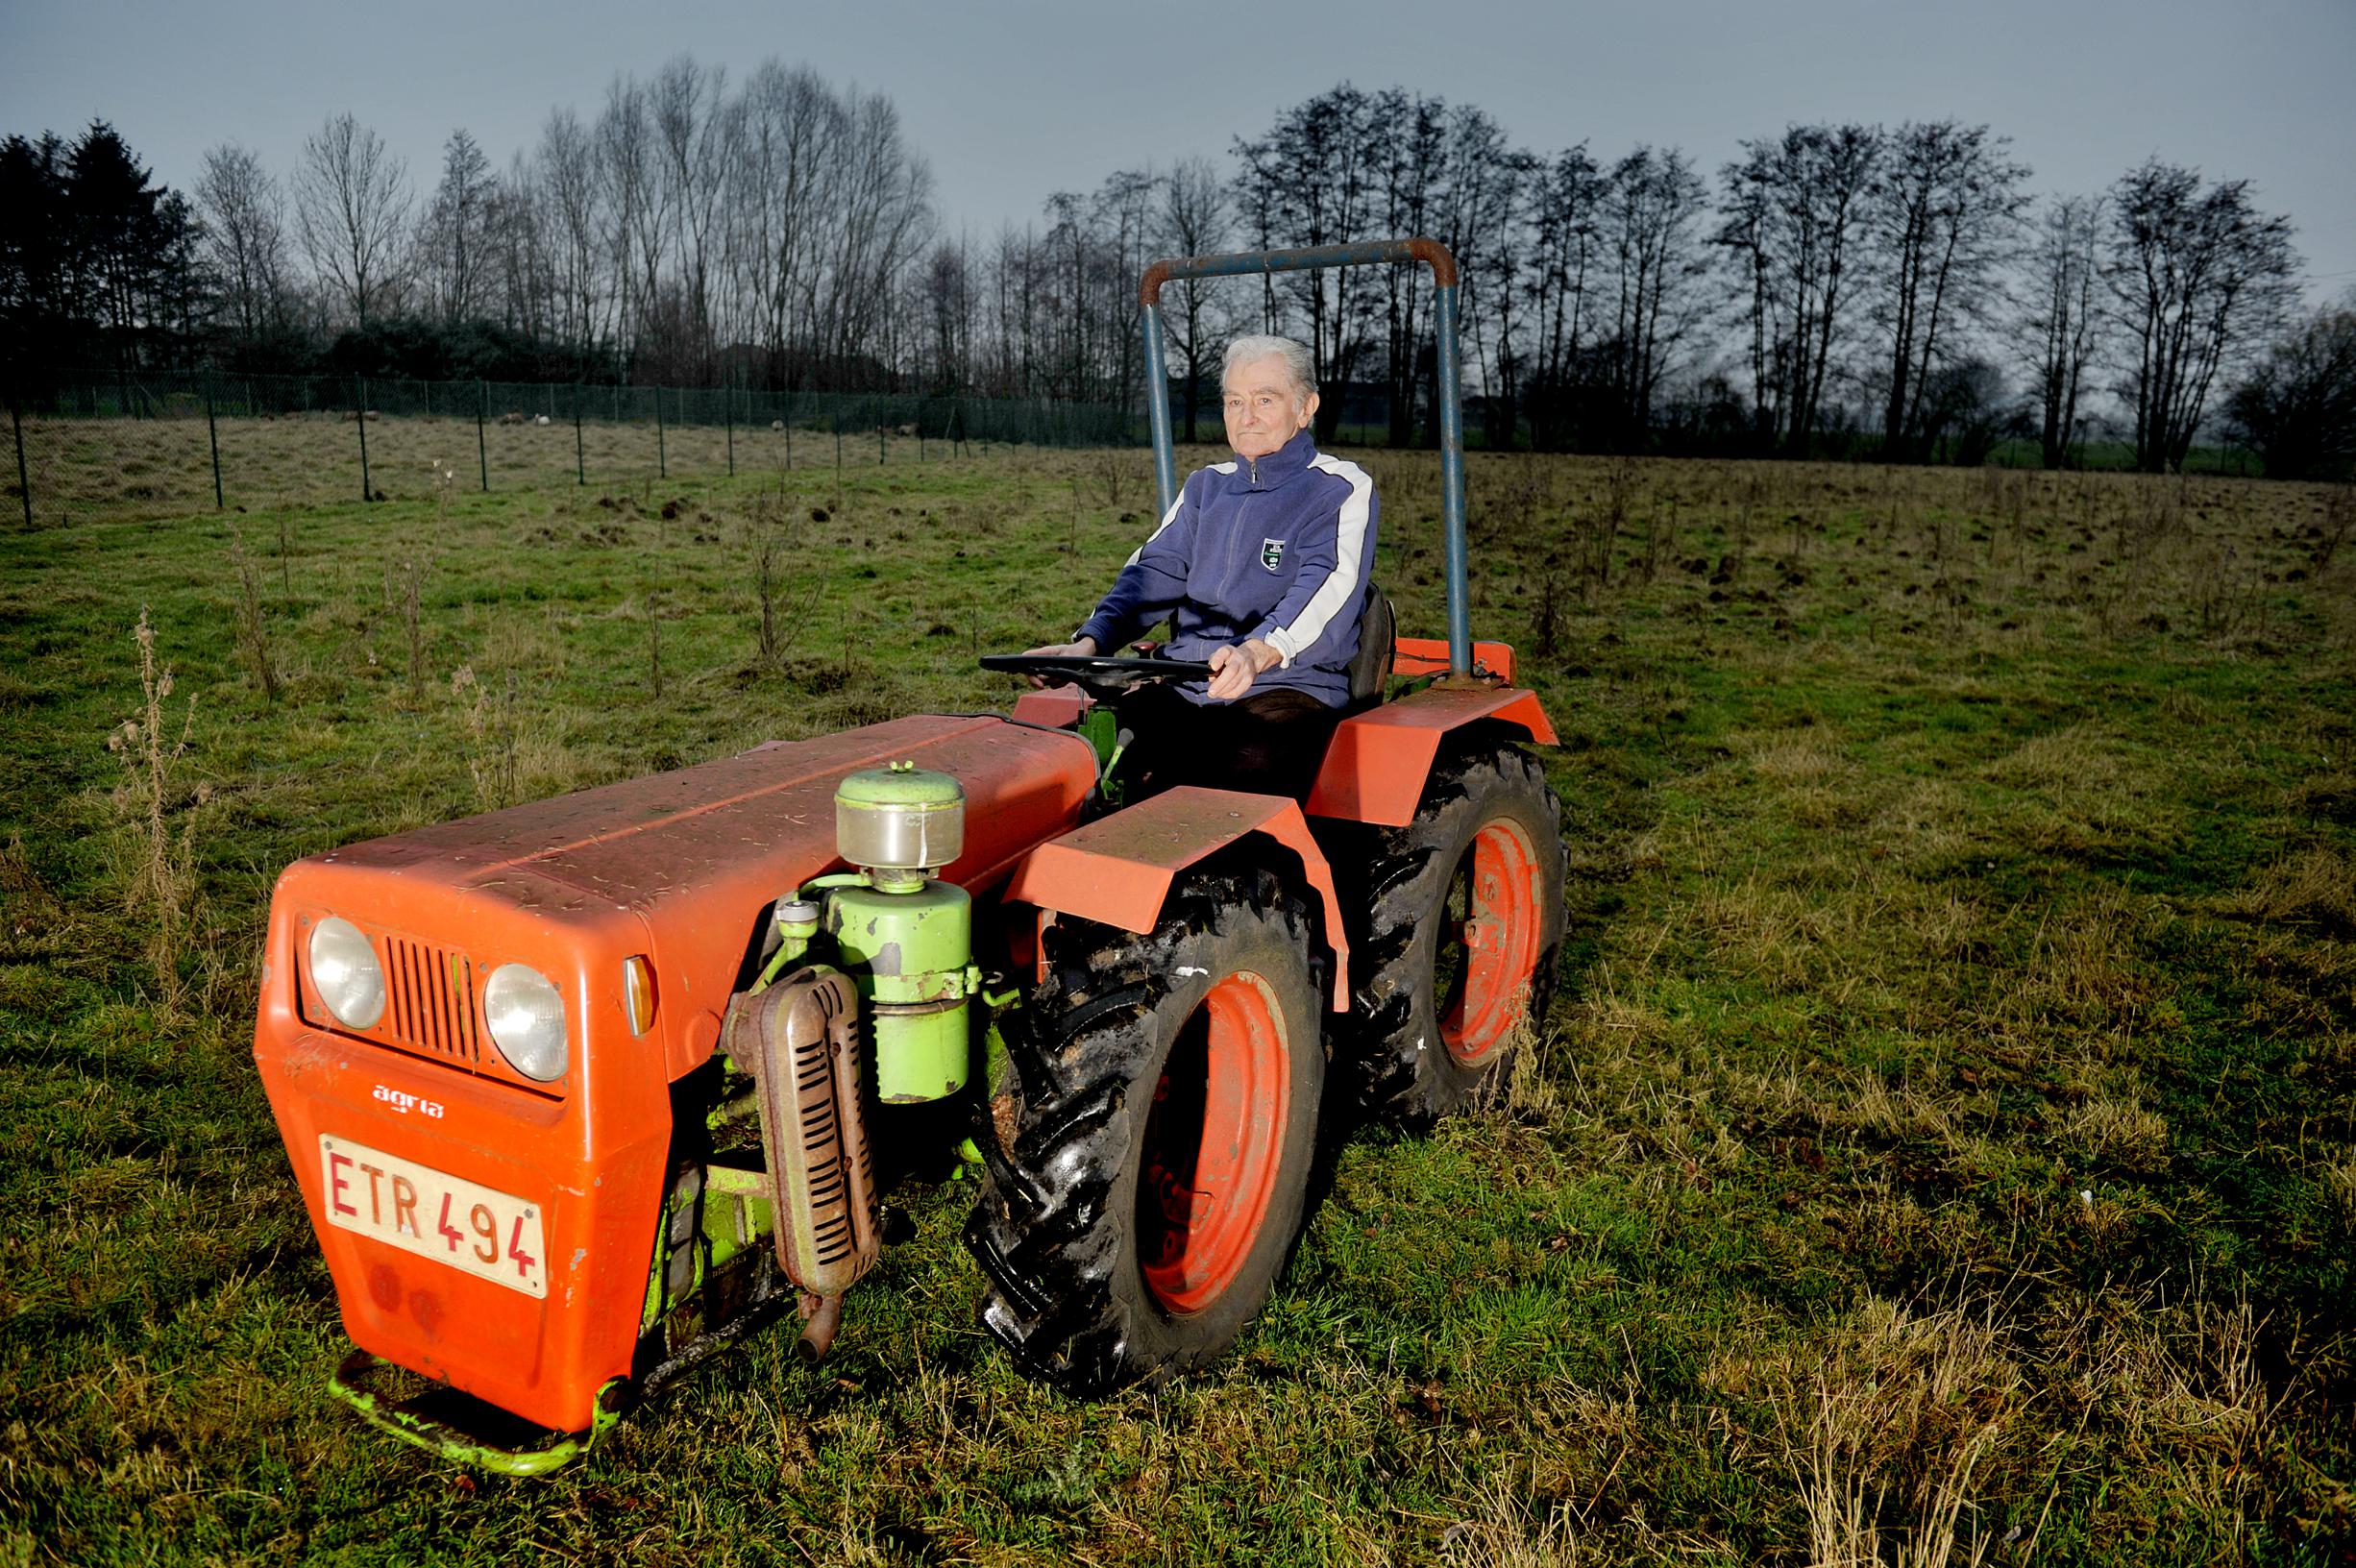 tarief waardigheid bouwen Etienne (76) uit Lokeren krijgt absurde flitsboete: met 77 km/u door  Opitter op tuinbouwtractor (Bree) | Het Belang van Limburg Mobile